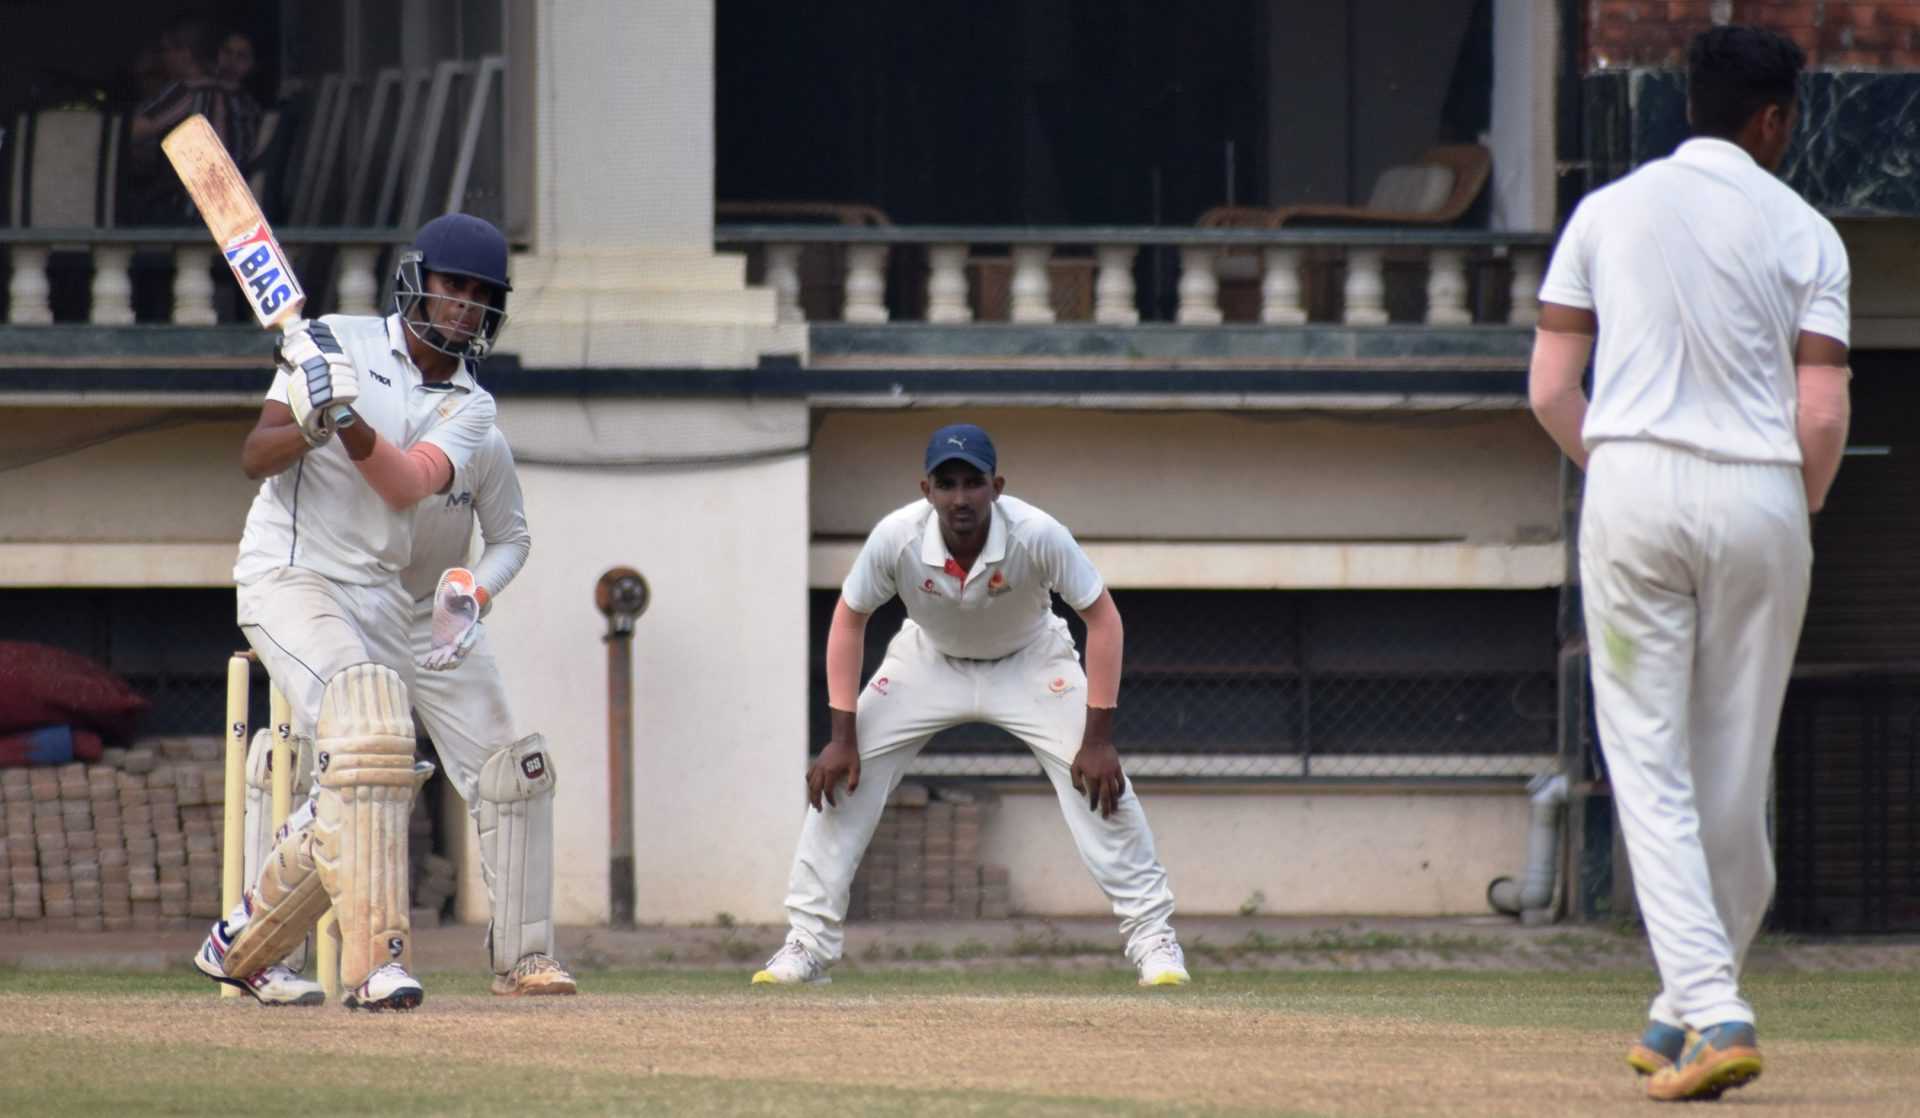 चौथ्या पीवायसी गोल्डफिल्ड राजू भालेकर स्मृती करंडक निमंत्रित 19 वर्षाखालील गटाच्या तीन दिवसीय क्रिकेट स्पर्धेत युनायटेड स्पोर्ट्स क्लबचा डेक्कन जिमखाना संघावर दणदणीत विजय